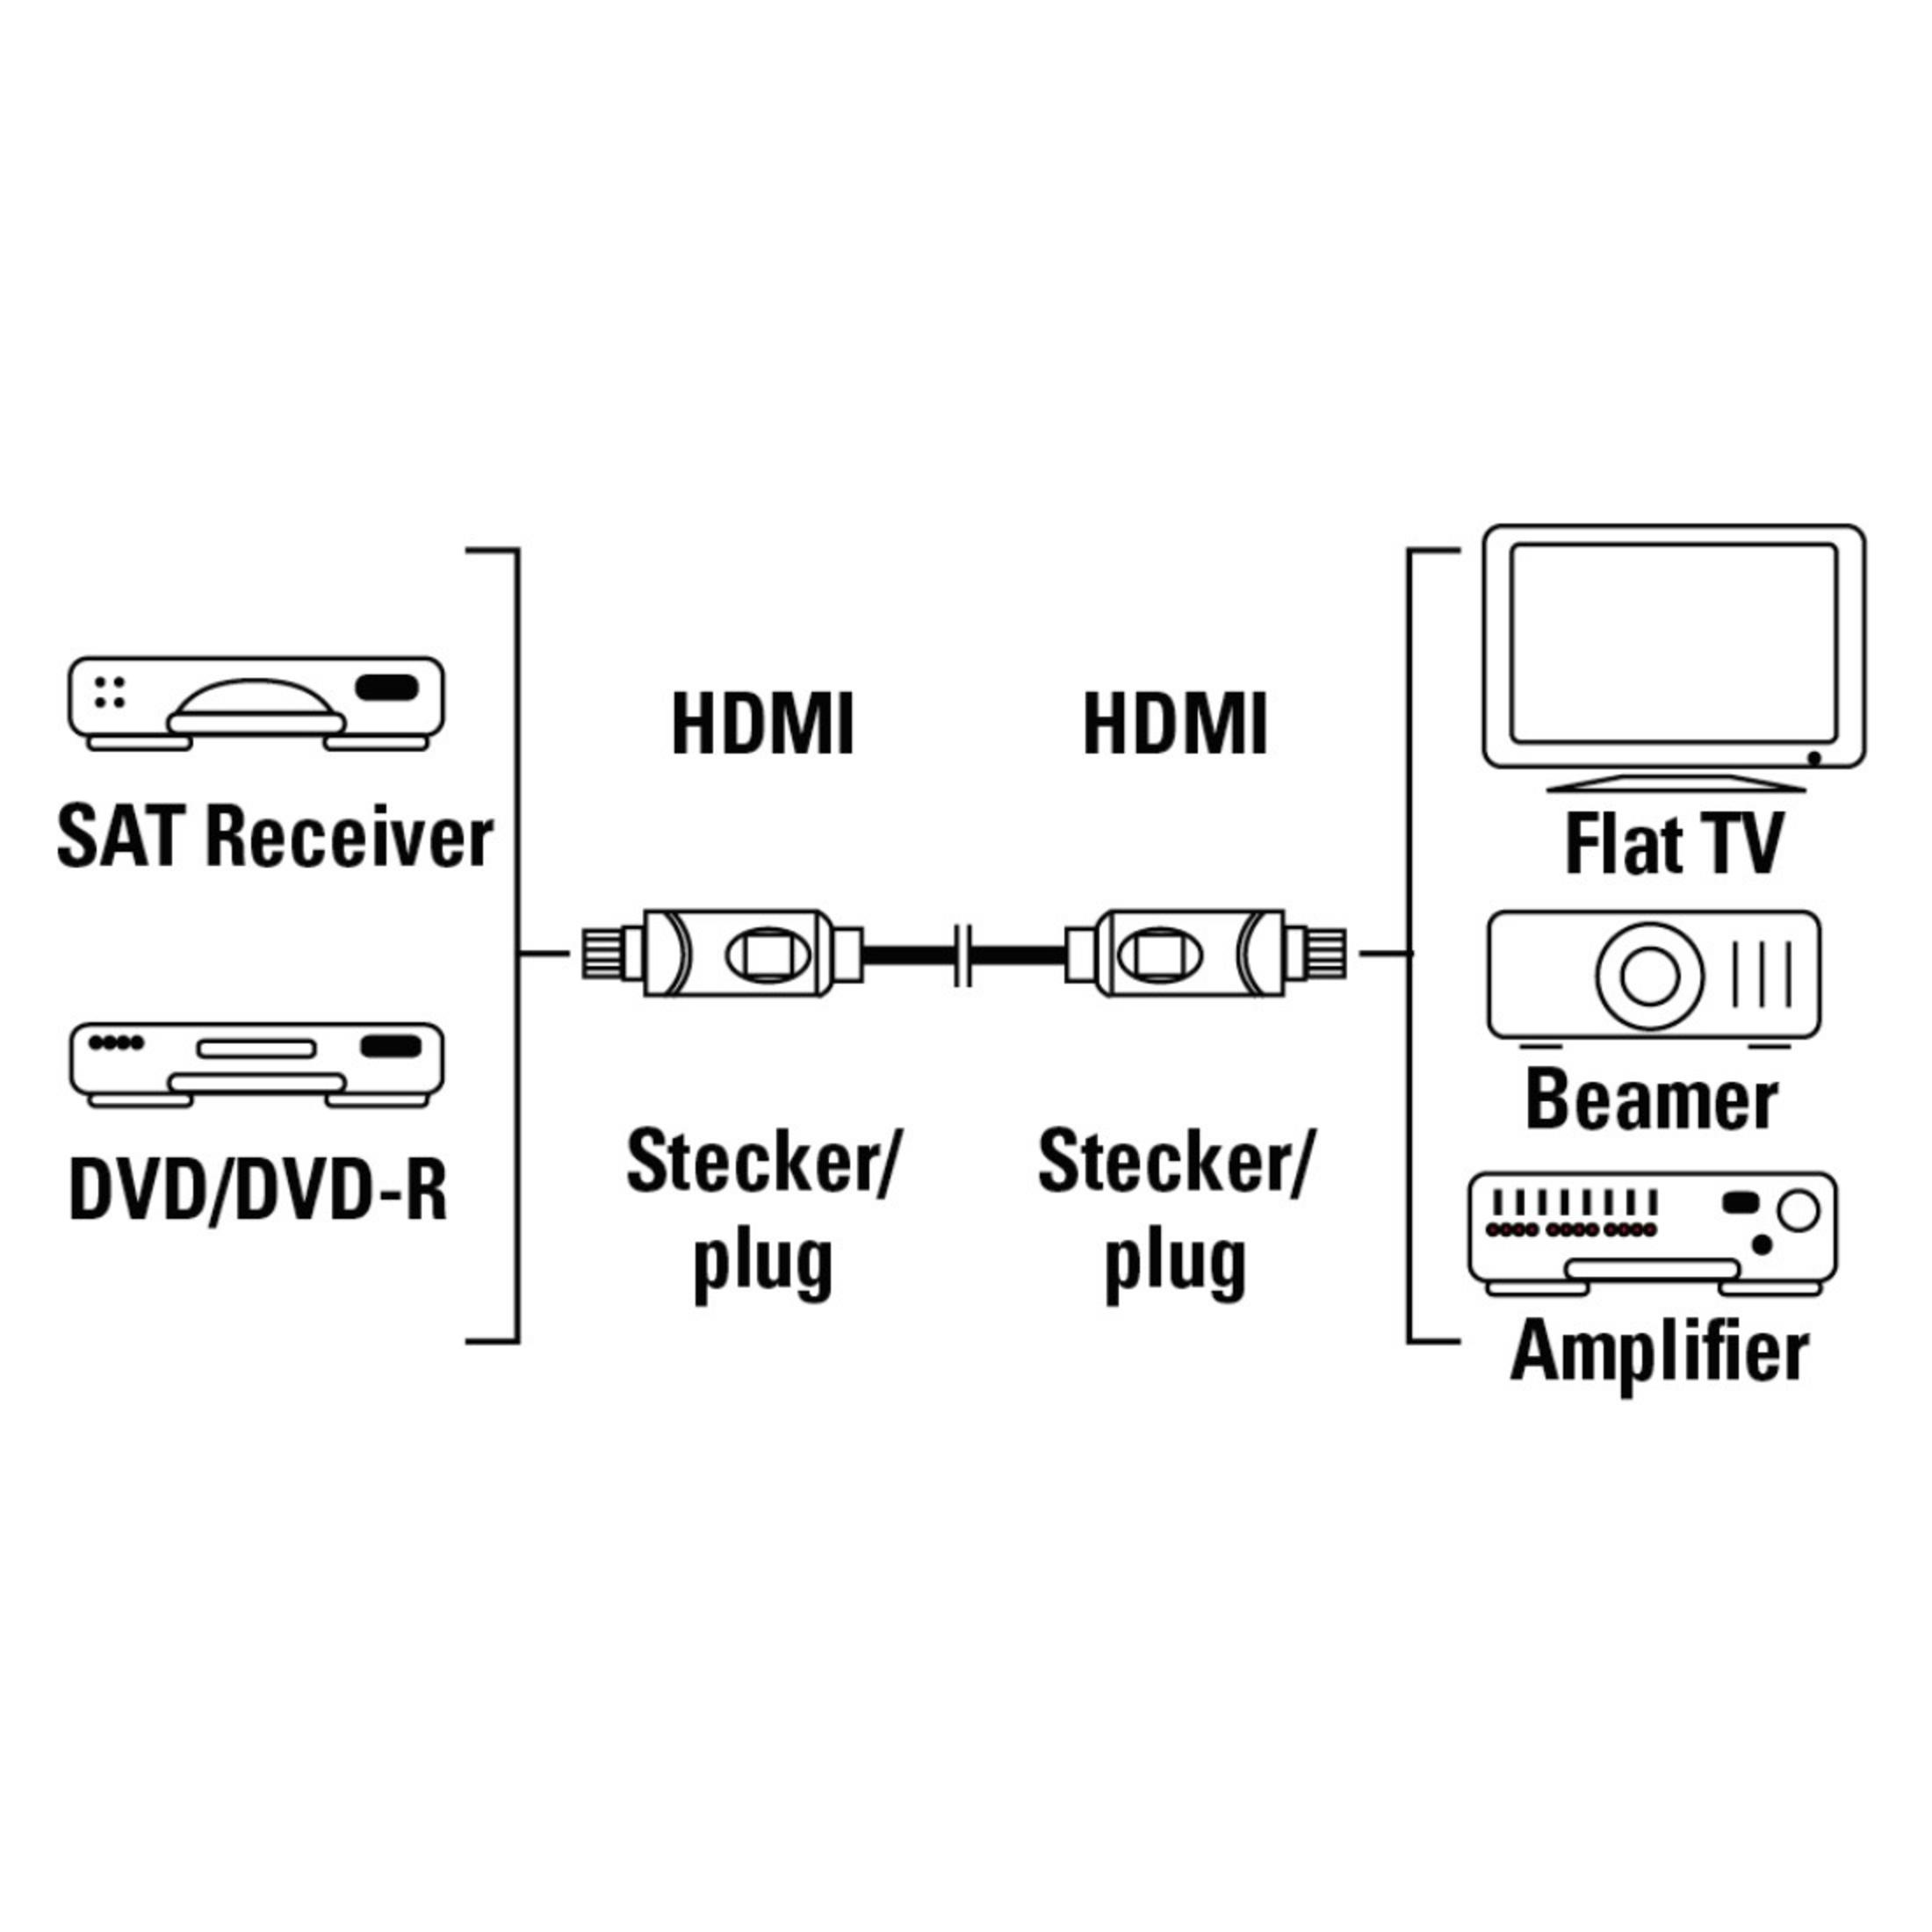 HAMA 011965 HDMI-KABEL IP25, HDMI 3 VERG.3,0M Kabel, m